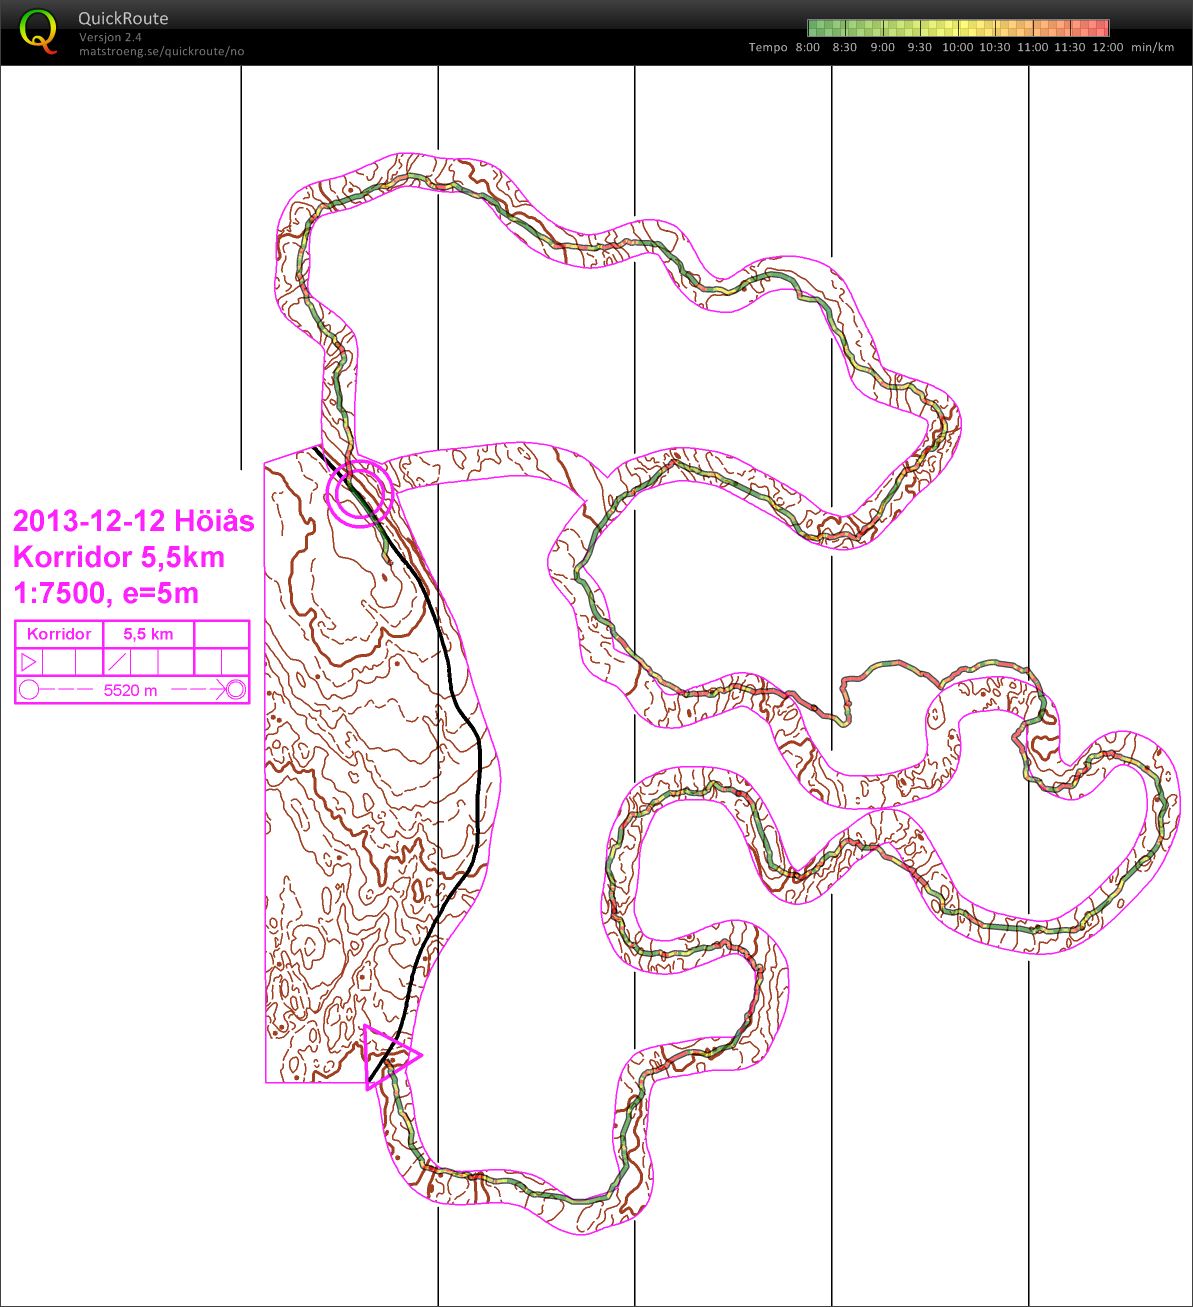 Kurvekorridor (2013-12-12)